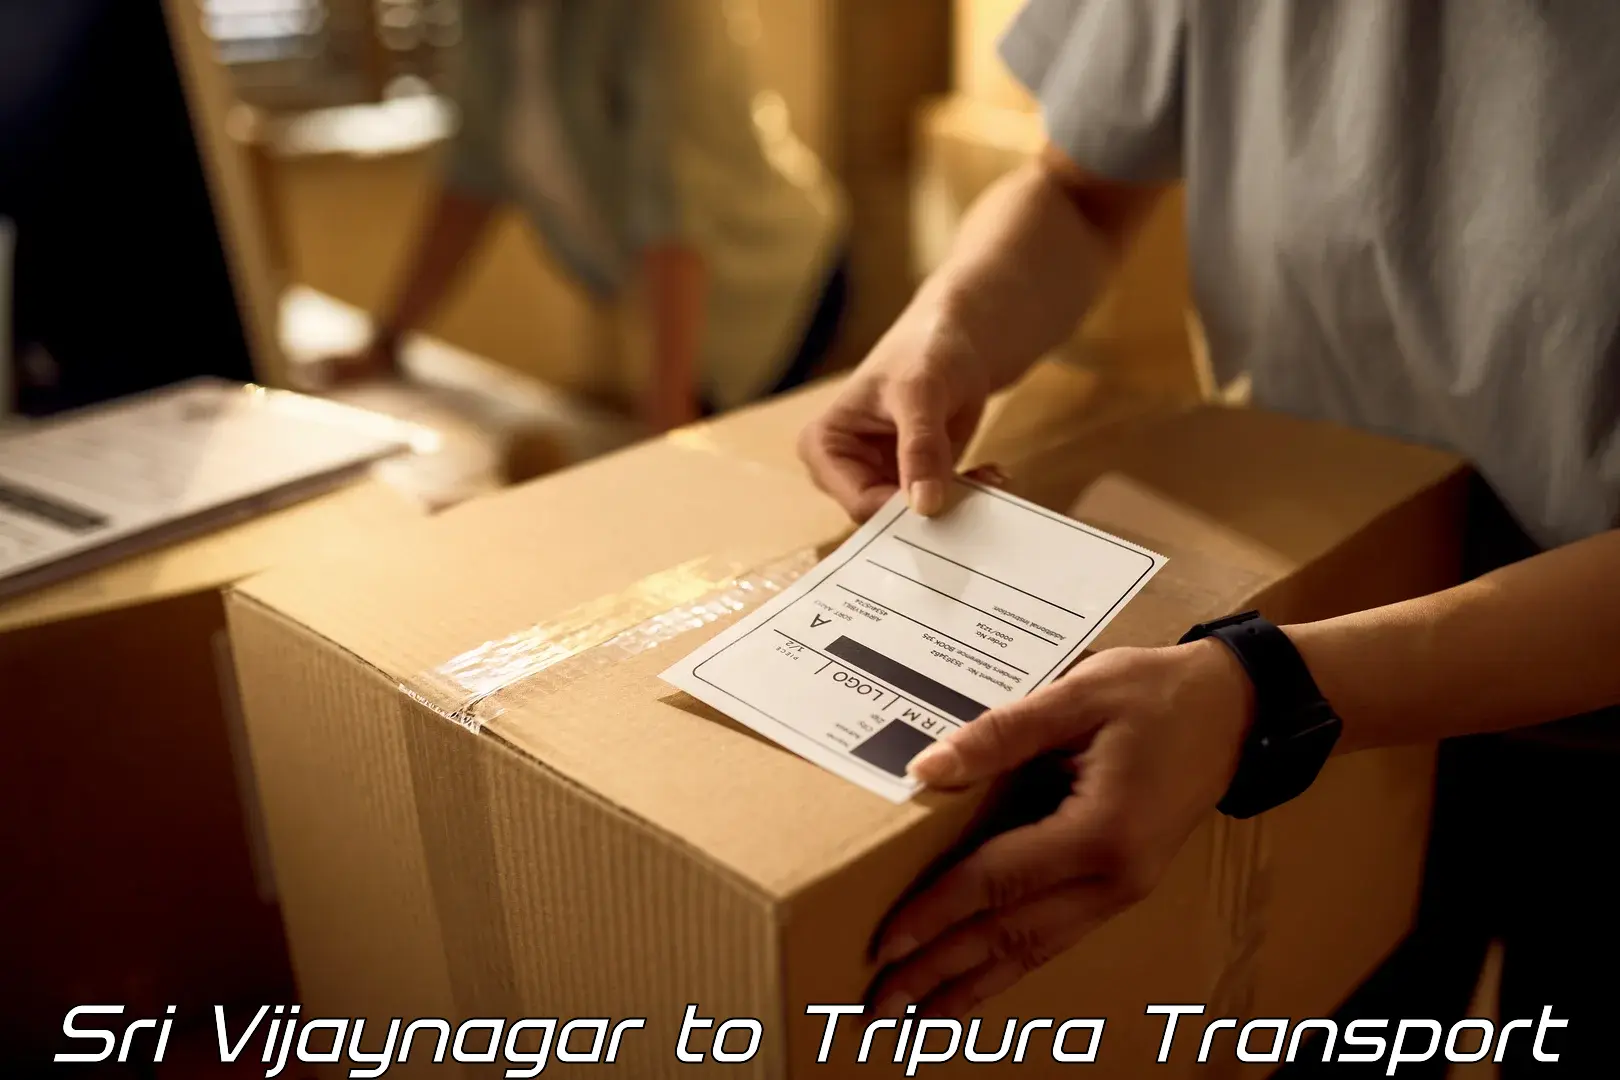 Transport in sharing Sri Vijaynagar to Agartala